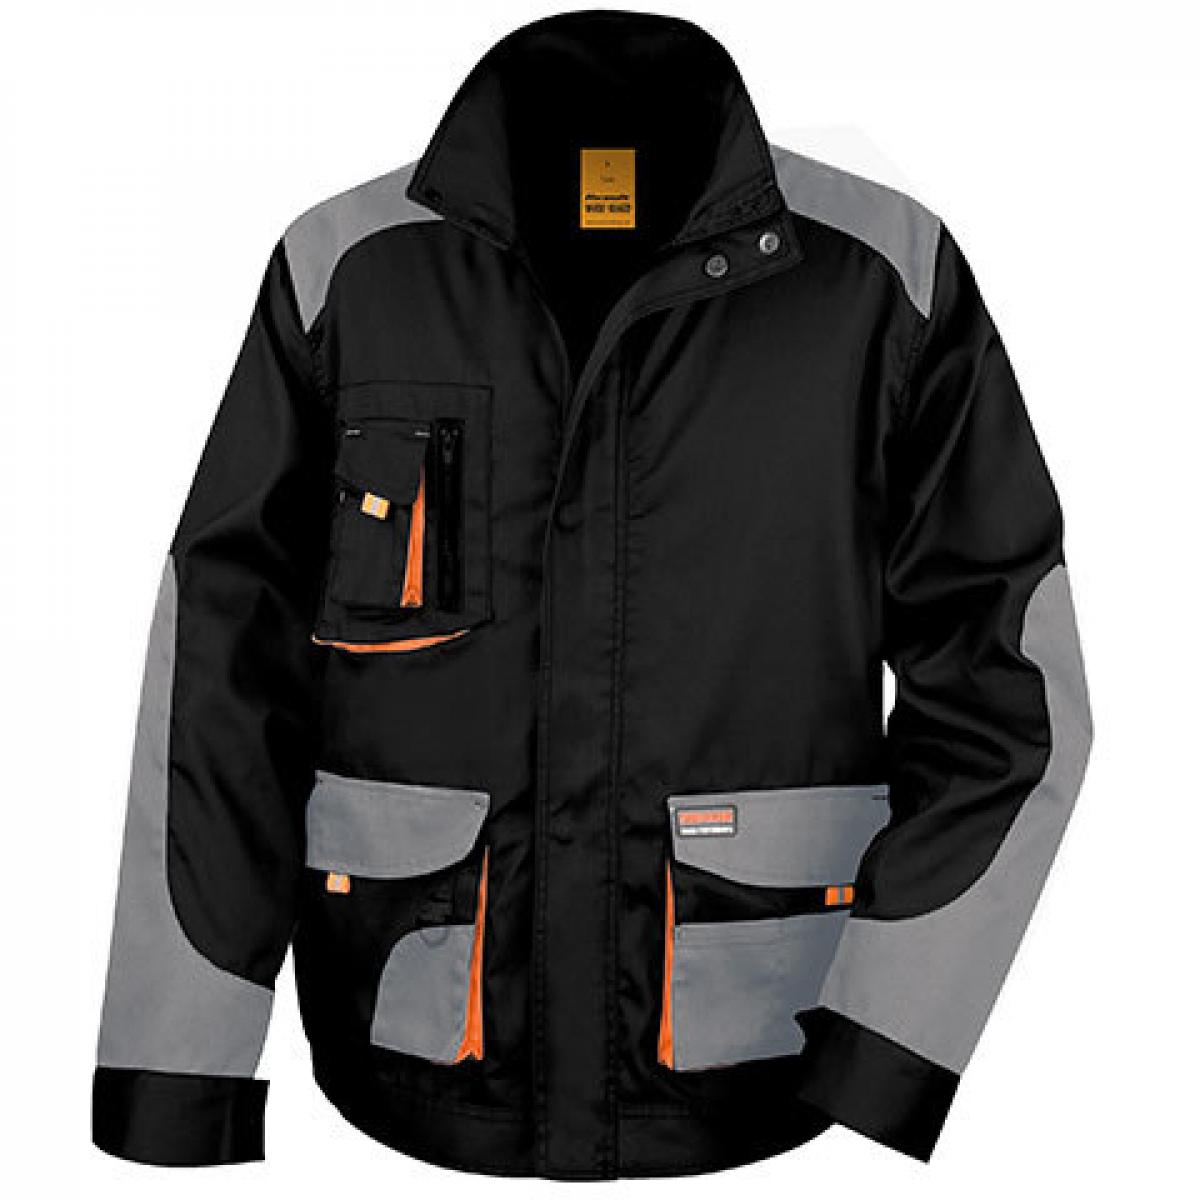 Hersteller: Result WORK-GUARD Herstellernummer: R316X Artikelbezeichnung: Herren Work-Guard Arbeits Jacke Farbe: Black/Grey/Orange